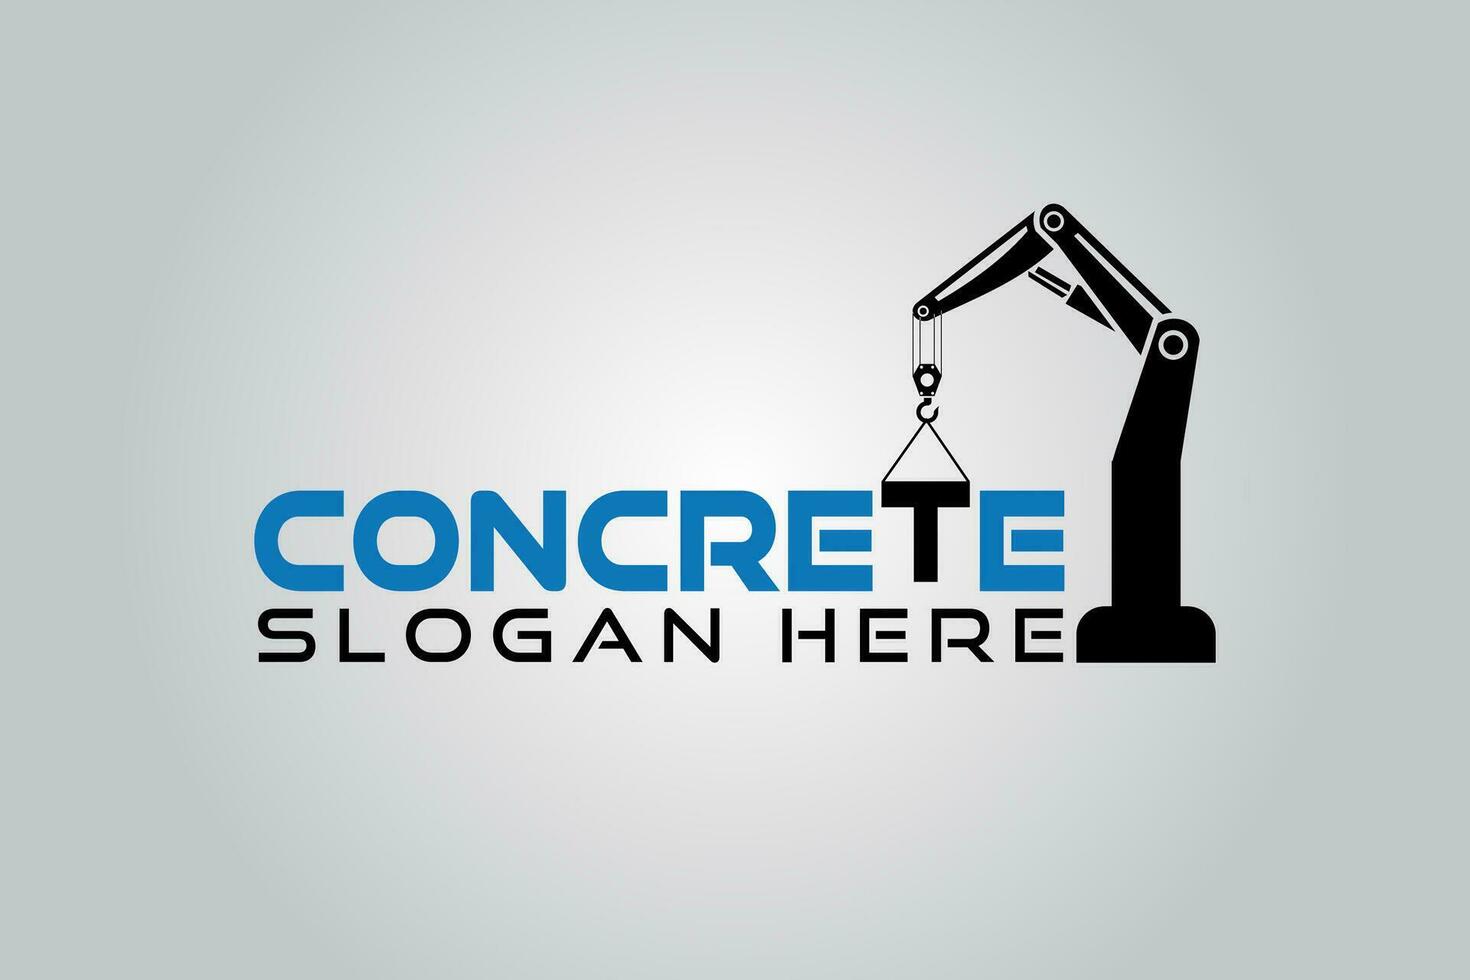 Concrete Construction logo Design template element vector